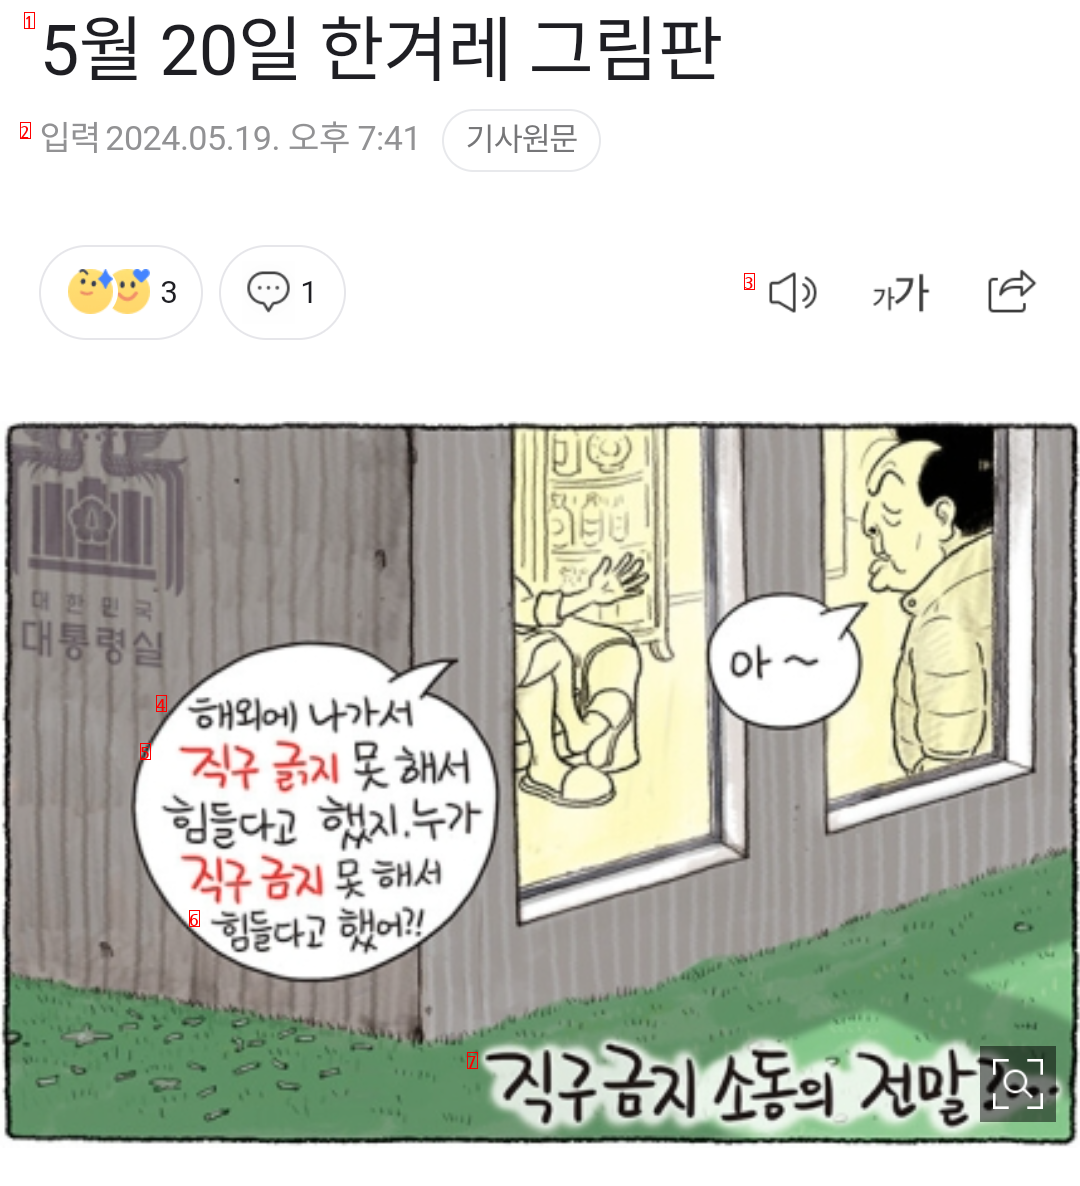 한겨레 만평 ㅡ 직구 금지 소동의 전말